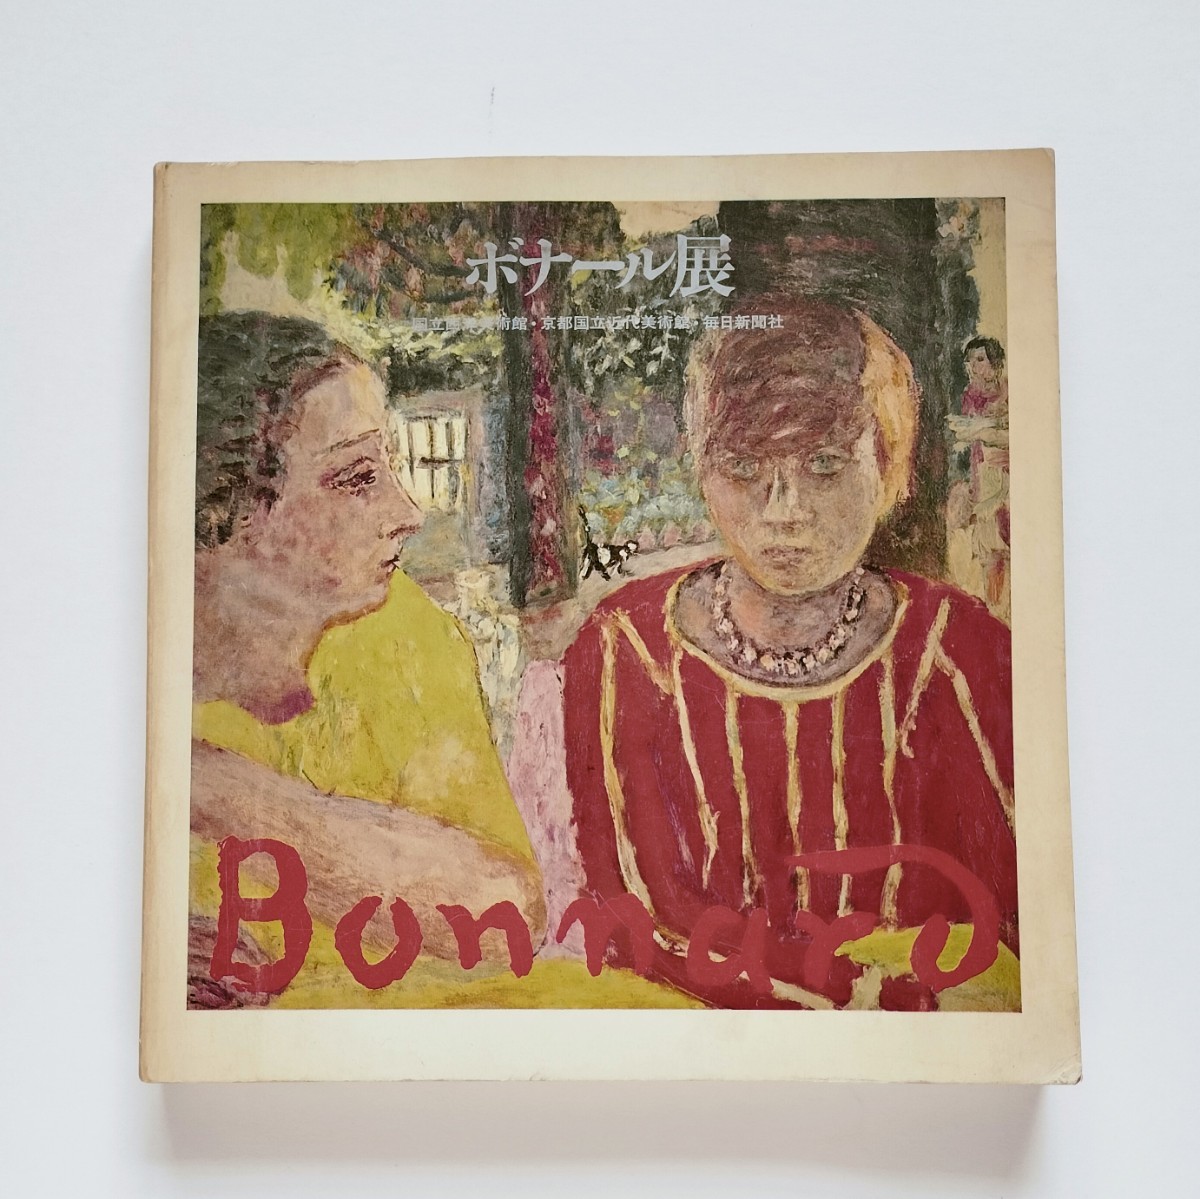 a4. Exposición Bonnard 100° Aniversario [Catálogo] 1968, Cuadro, Libro de arte, Recopilación, Catalogar